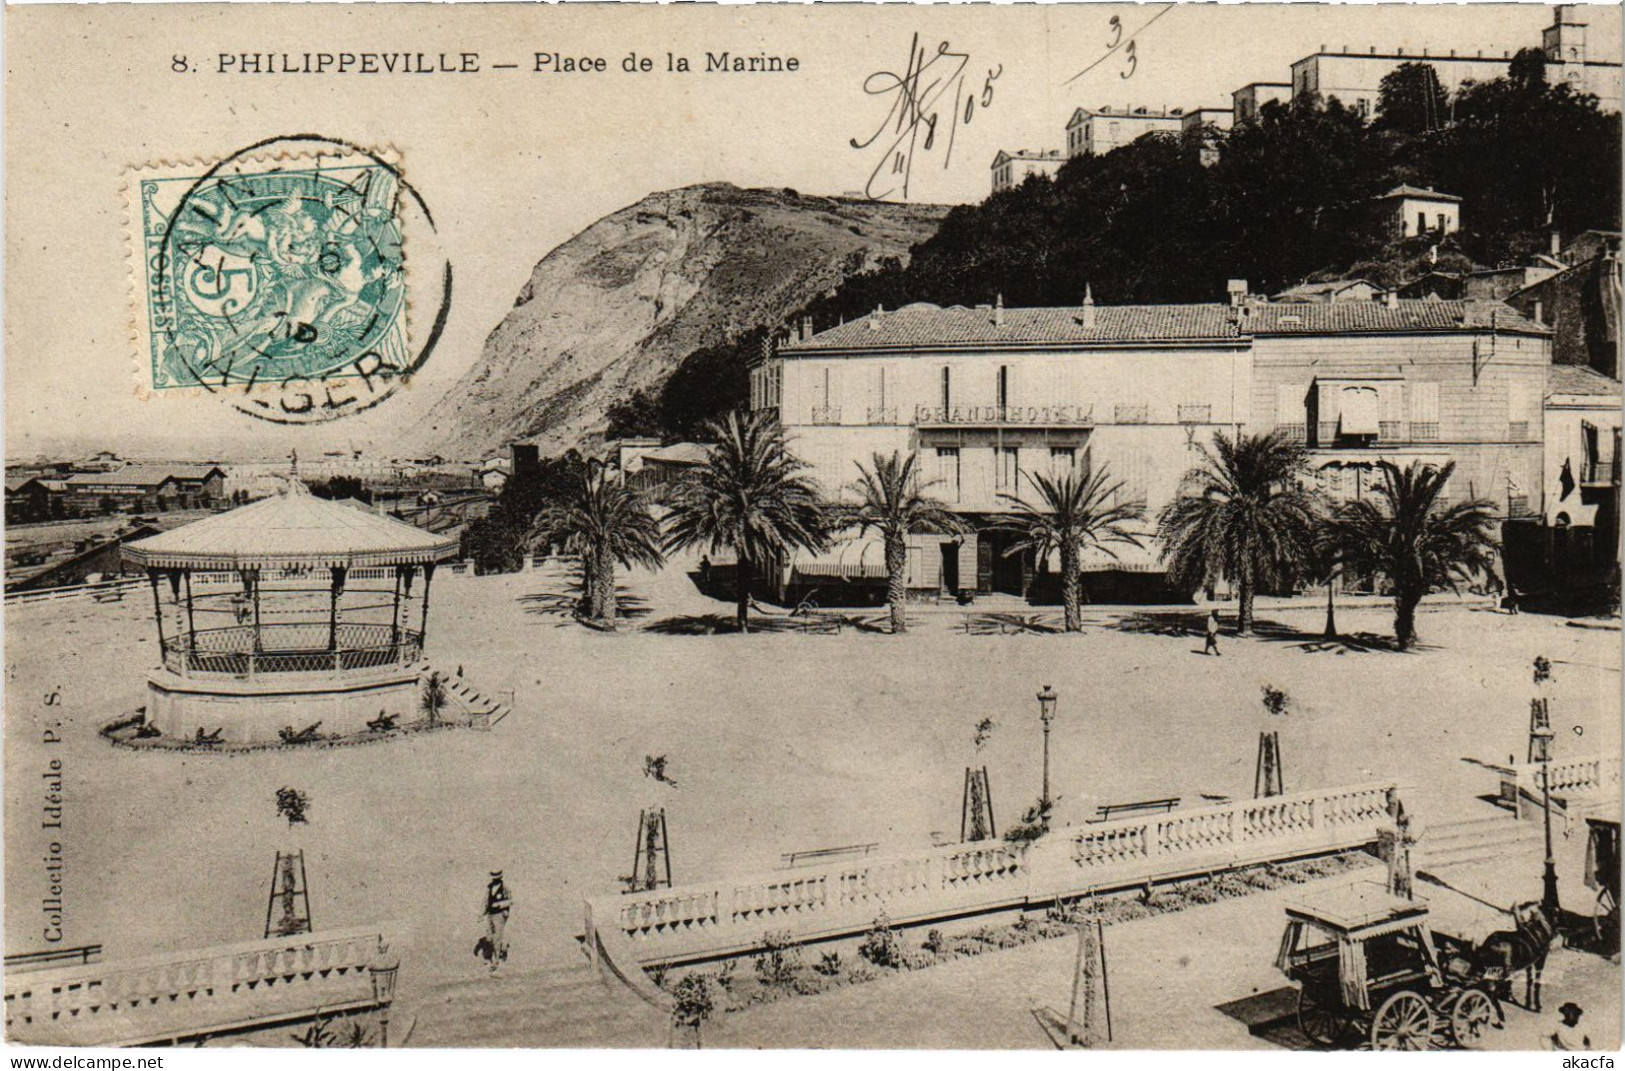 CPA AK PHILIPPEVILLE Place De La Marine ALGERIA (1389505) - Skikda (Philippeville)